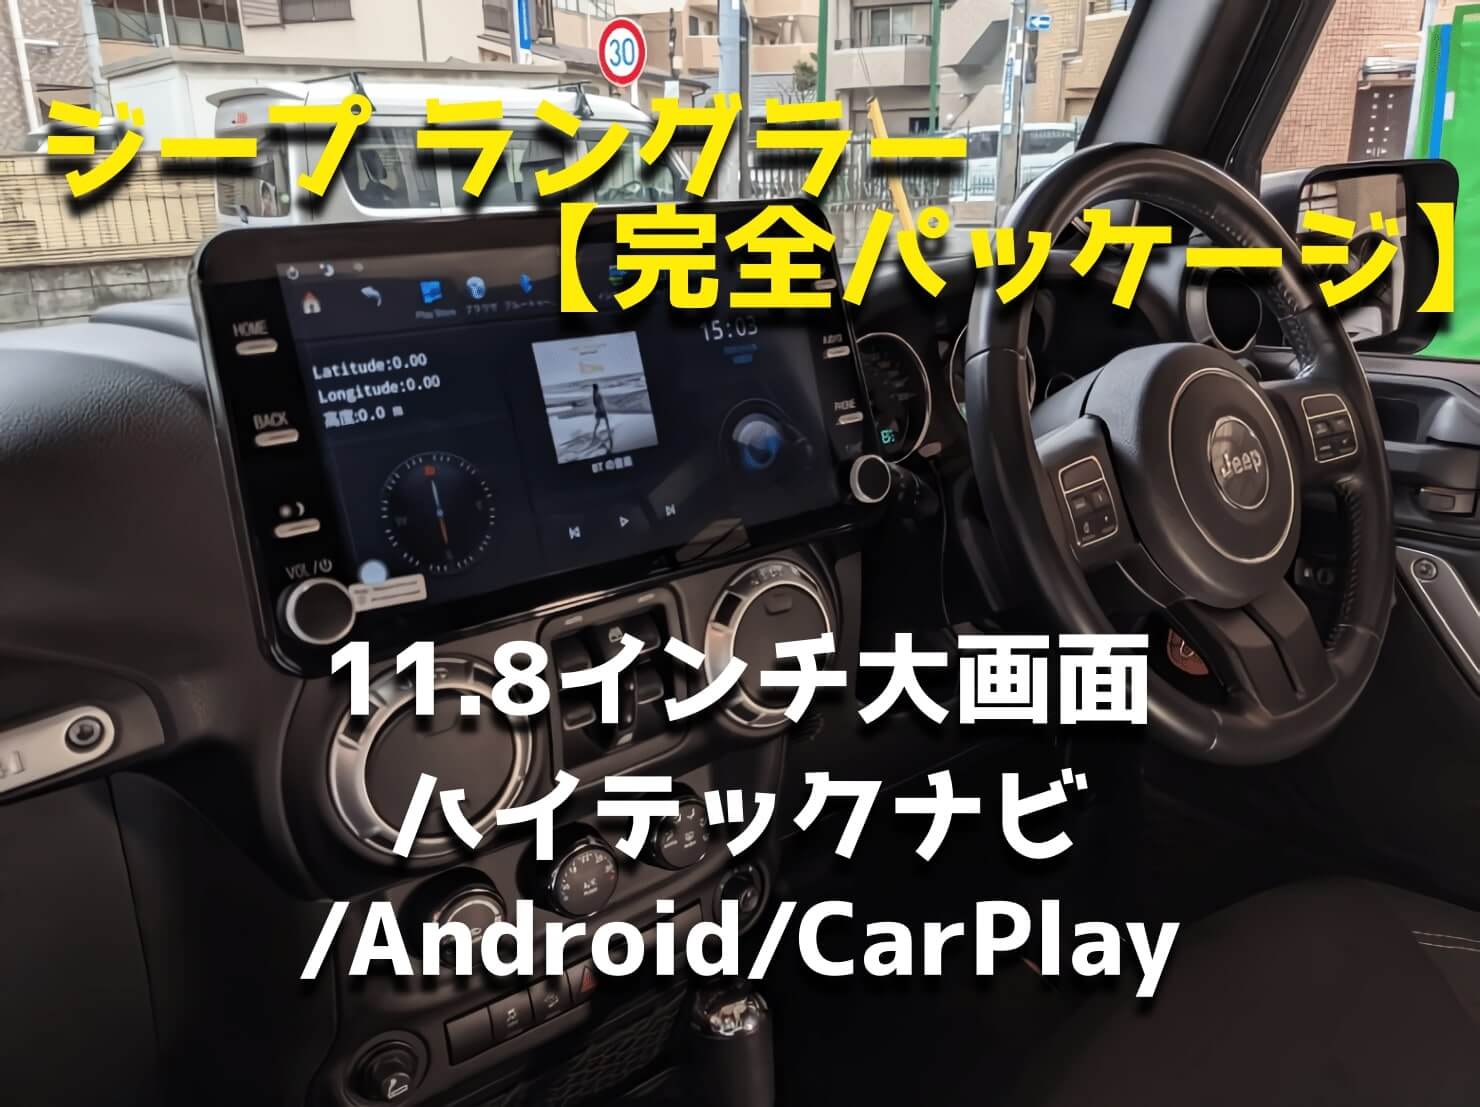 ジープラングラー(完全パッケージ)11.8インチハイテックナビ,Android,CarPlay